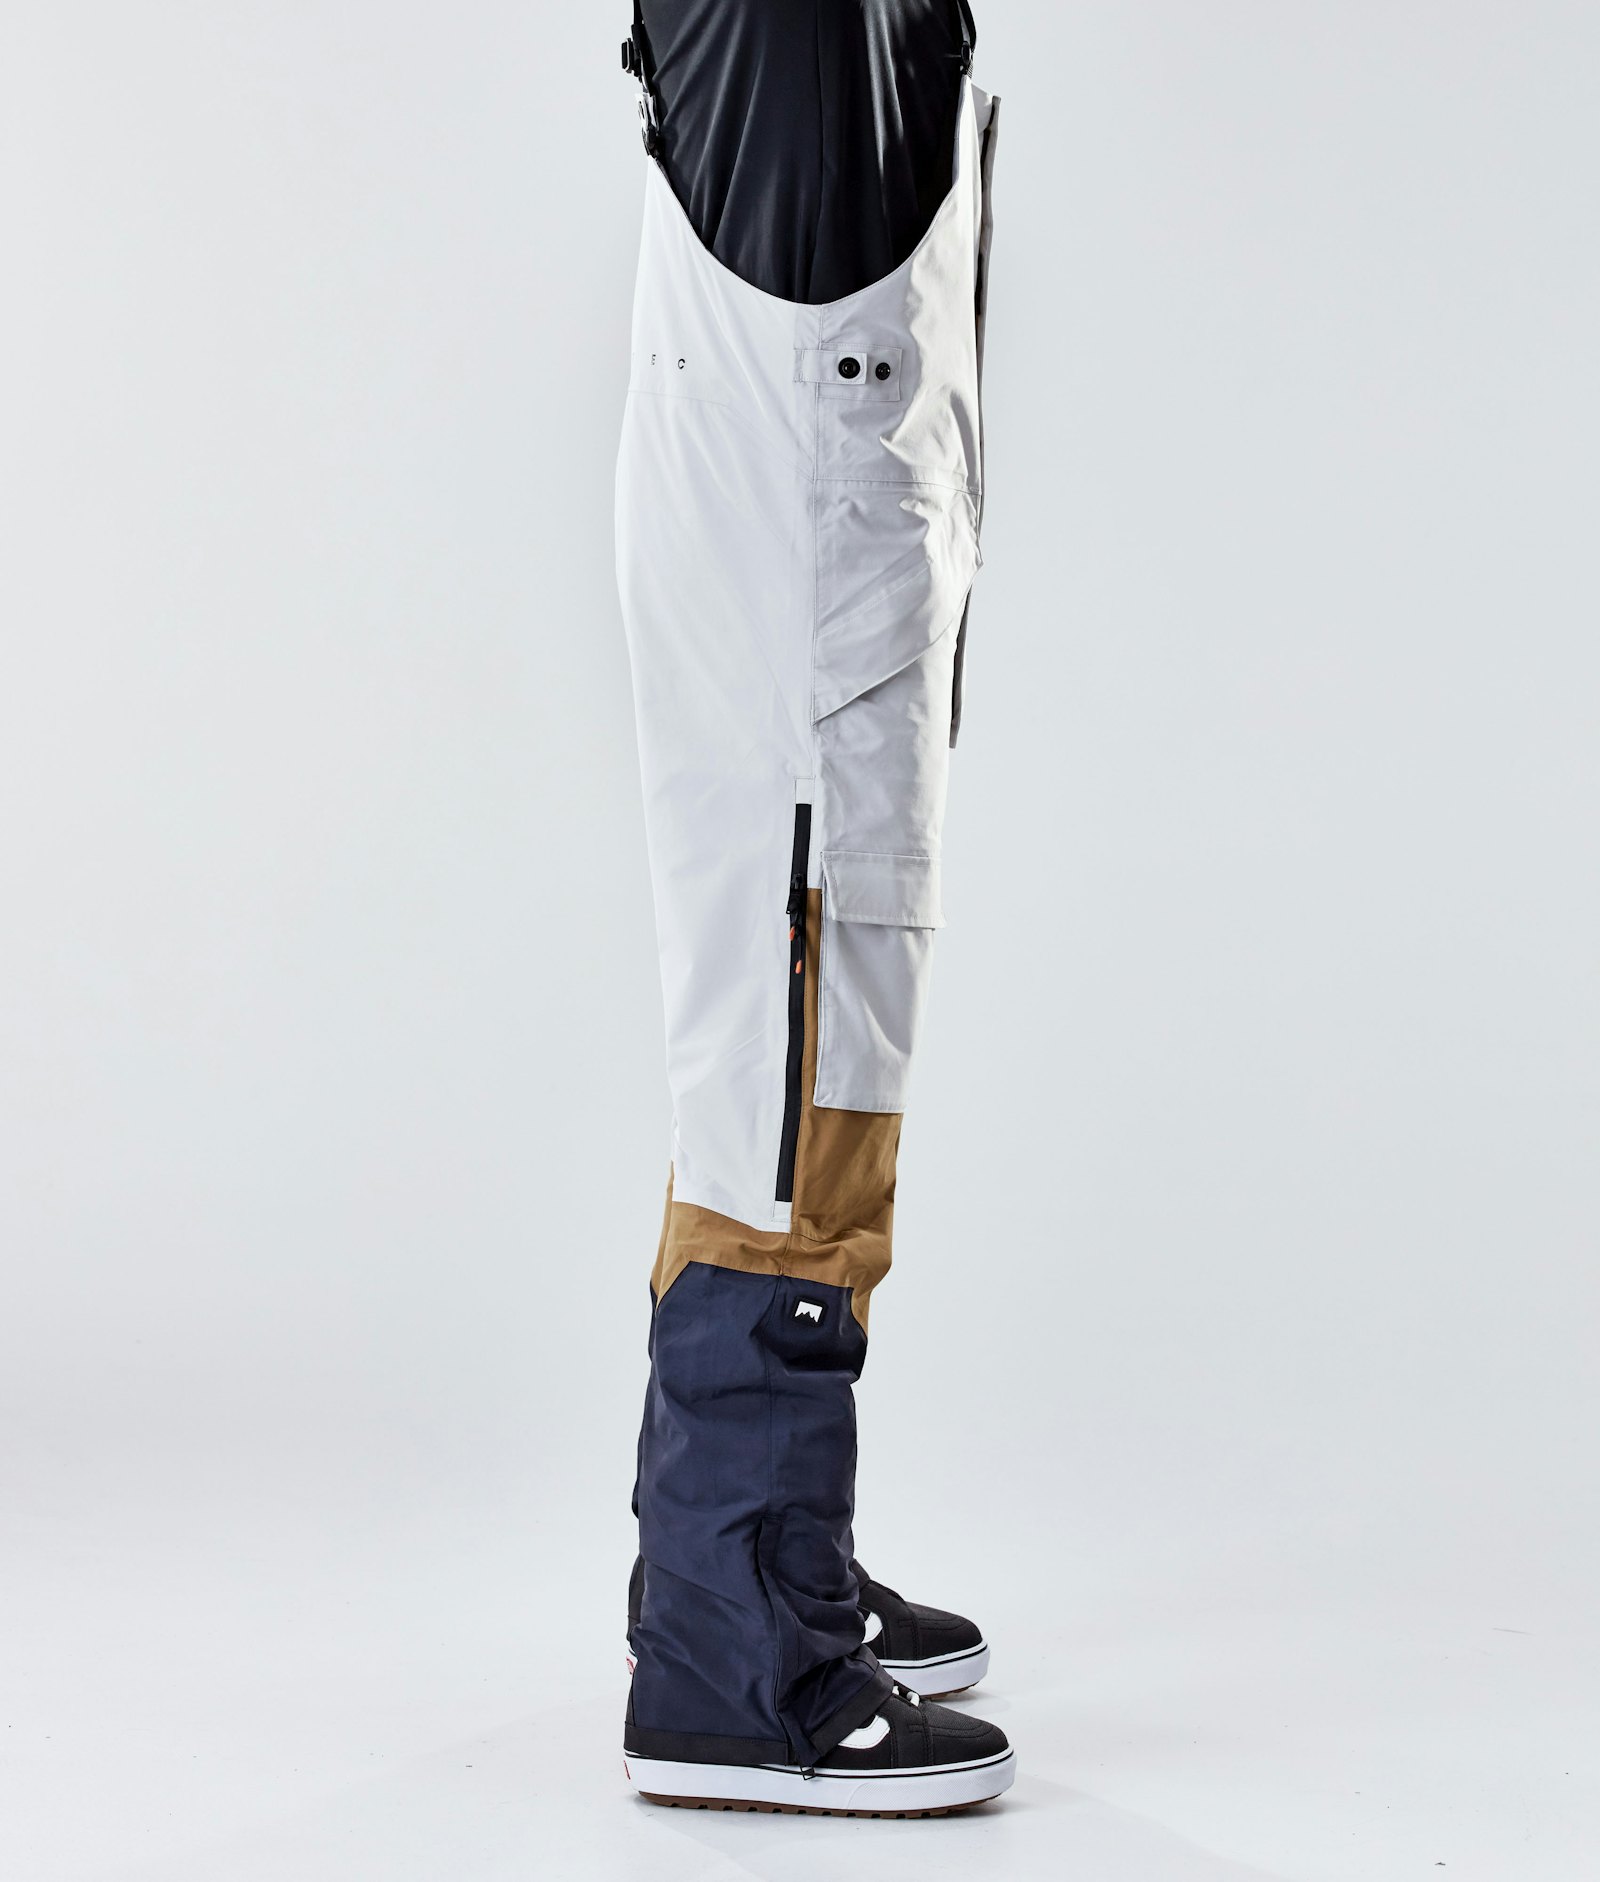 Fawk 2020 Kalhoty na Snowboard Pánské Light Grey/Gold/Marine